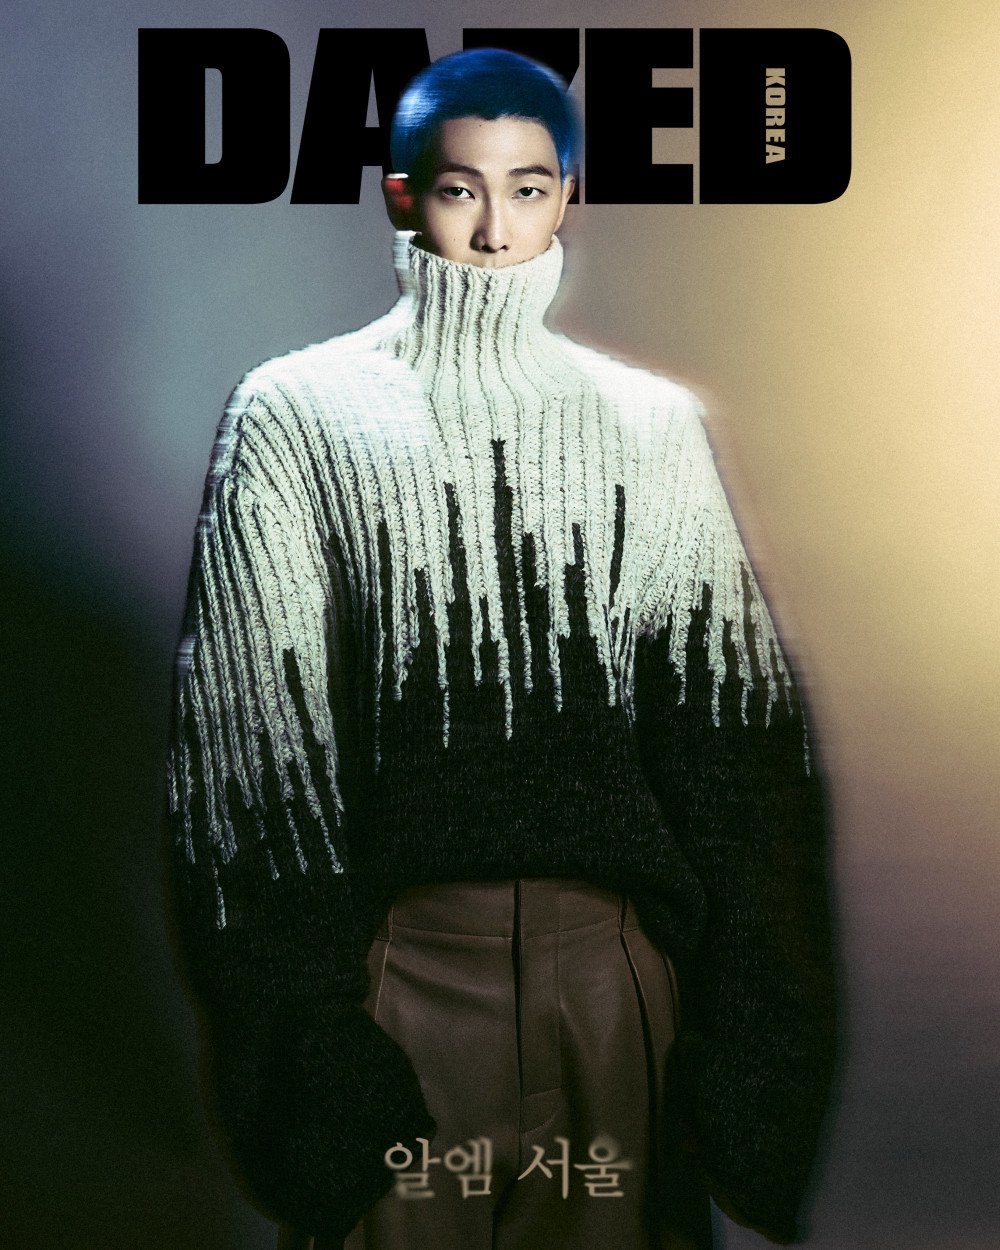 RM из BTS обнажает свою пламенную душу в фотосессии для обложки "Dazed"